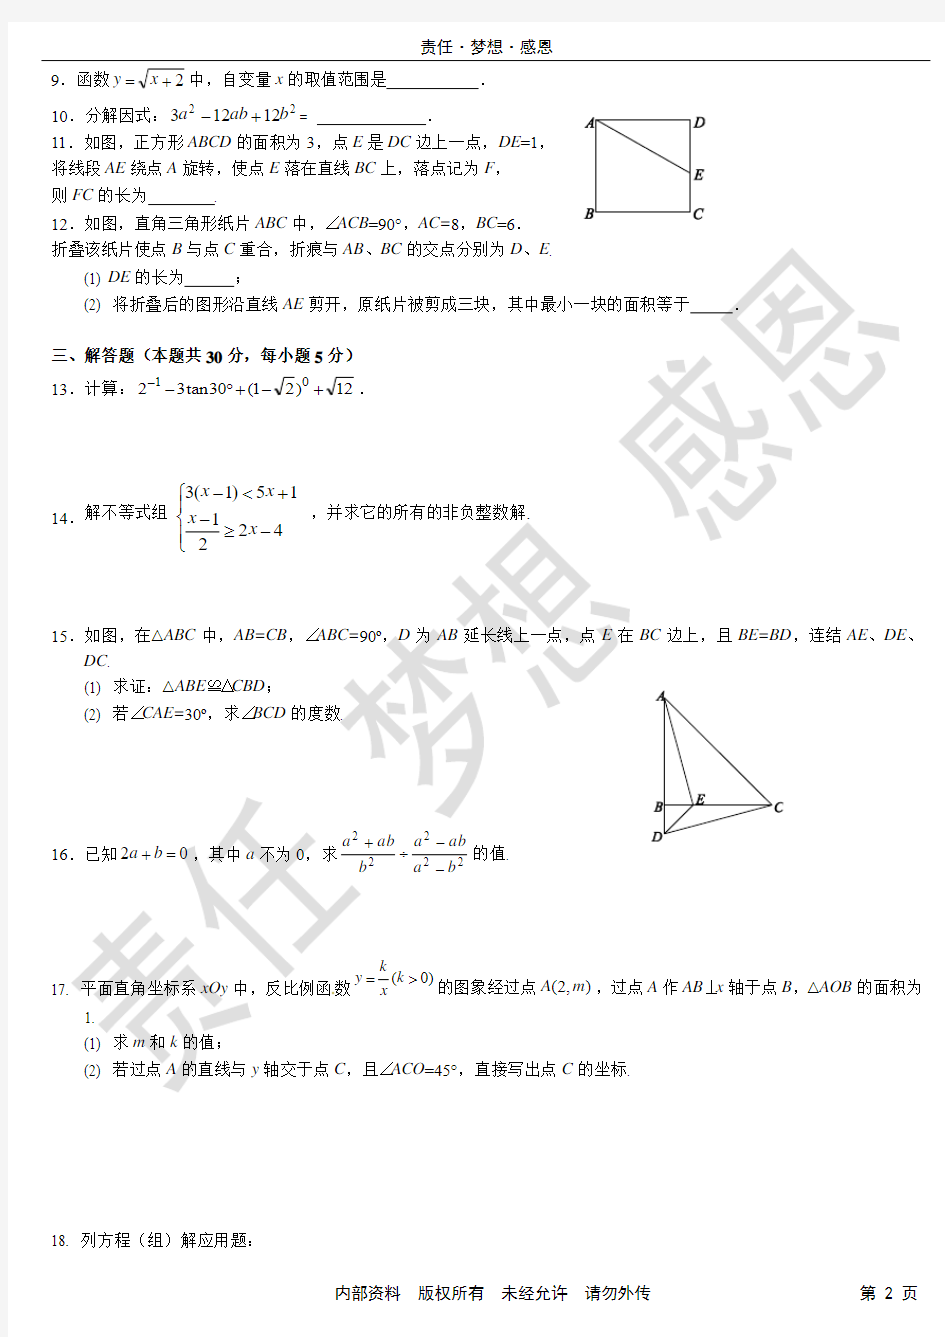 【冲刺中考】中考数学模拟试卷(2)(含标准参考答案)